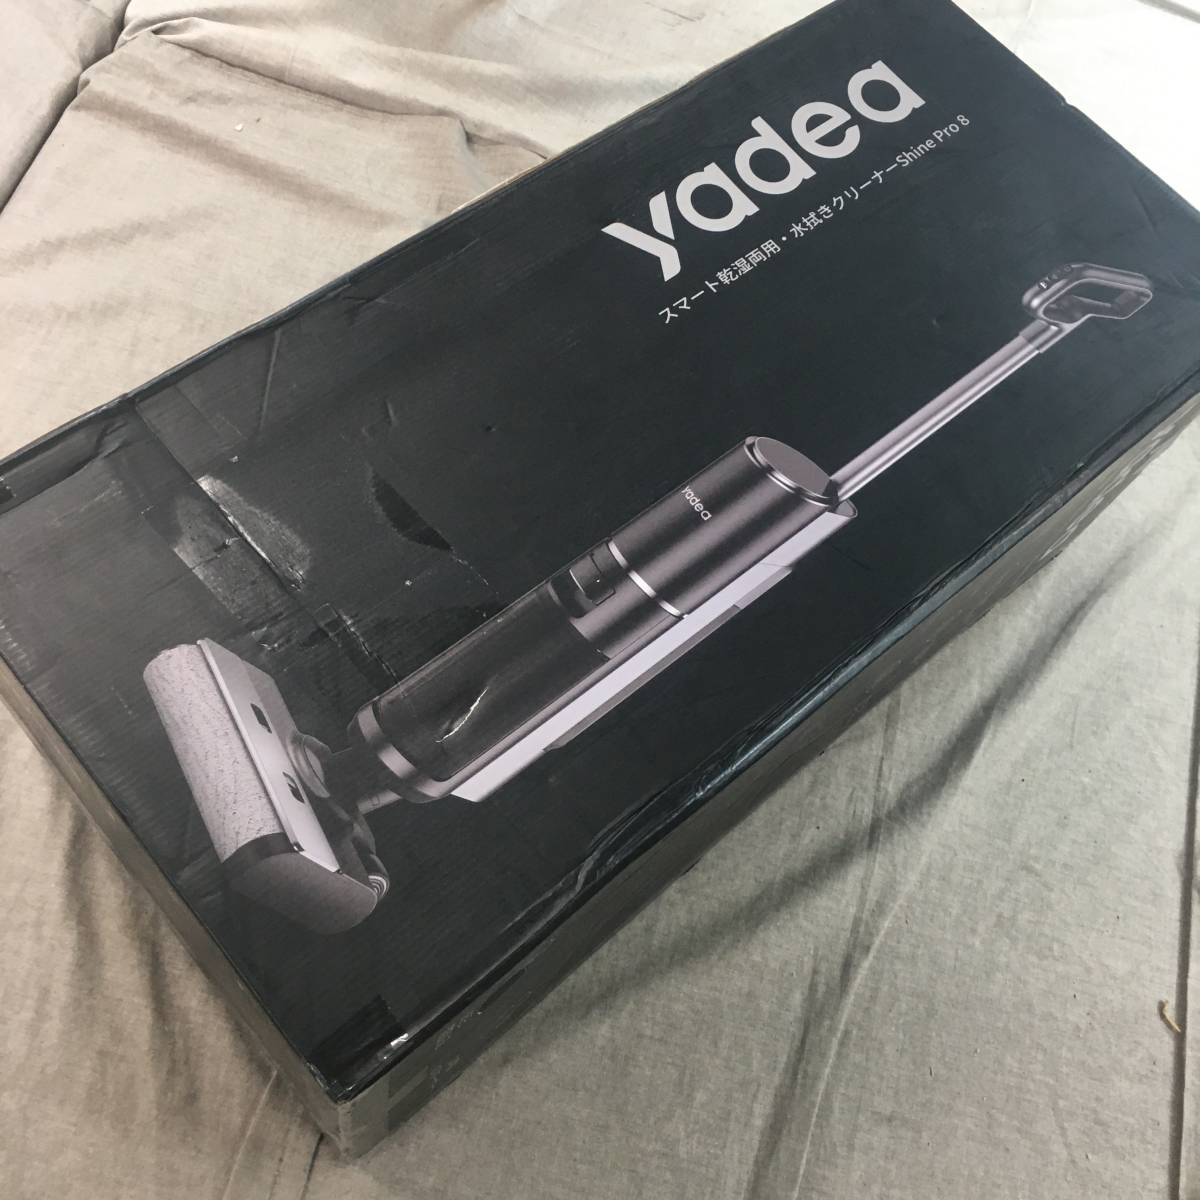 未開封 Yadea Shine Pro 8 水拭き掃除機 スティッククリーナー 強力吸引 コードレス 水も吸える 乾湿両用 電動モップ 床掃除 自走式 電解水_画像1